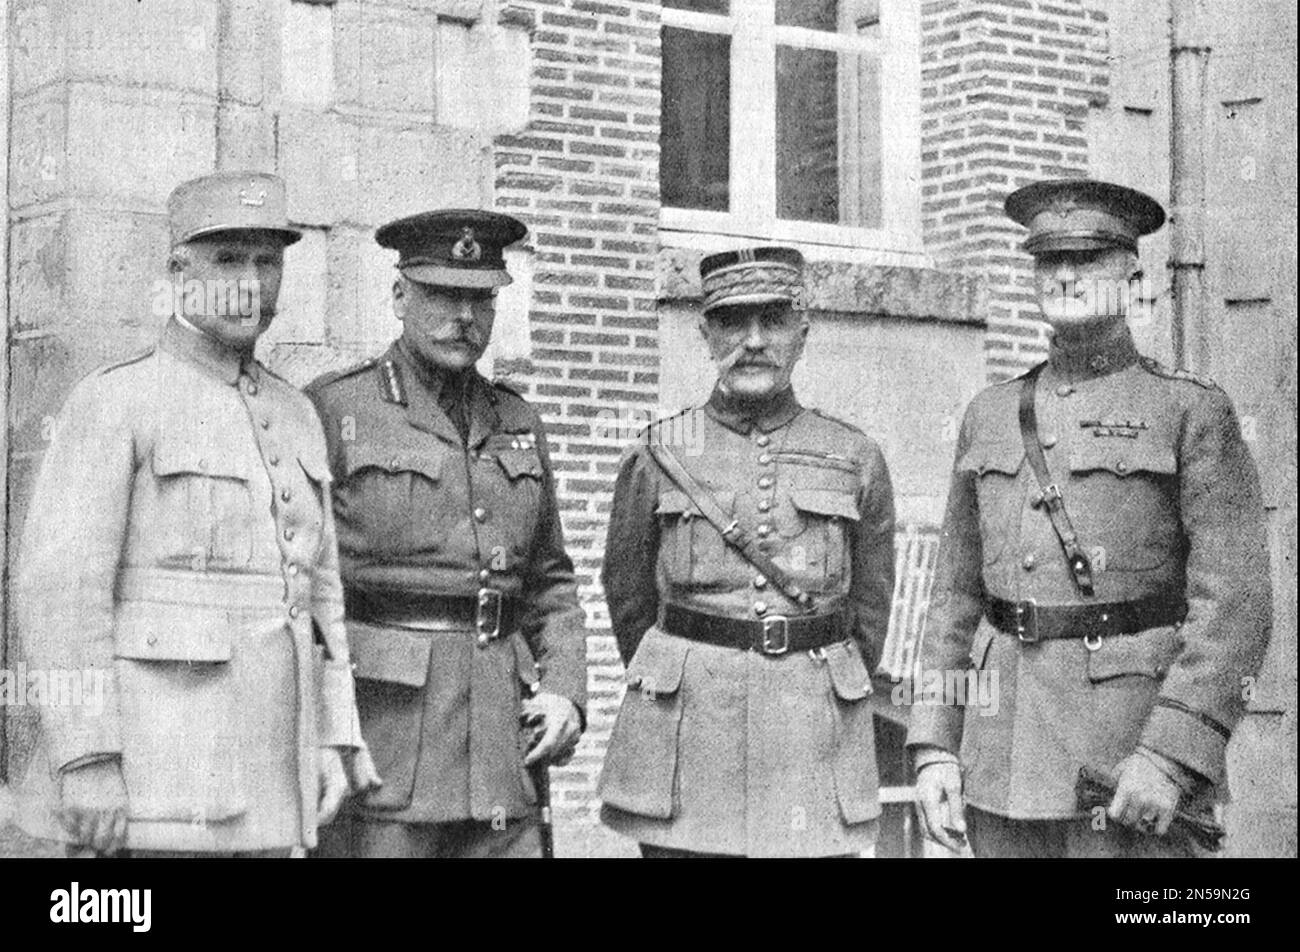 PRIMA GUERRA MONDIALE i generali alleati da sinistra: Petain, Haig, Foch, Pershing presso la sede centrale britannica, il castello di Valvion, a nord di Amiens nel 1917 Foto Stock